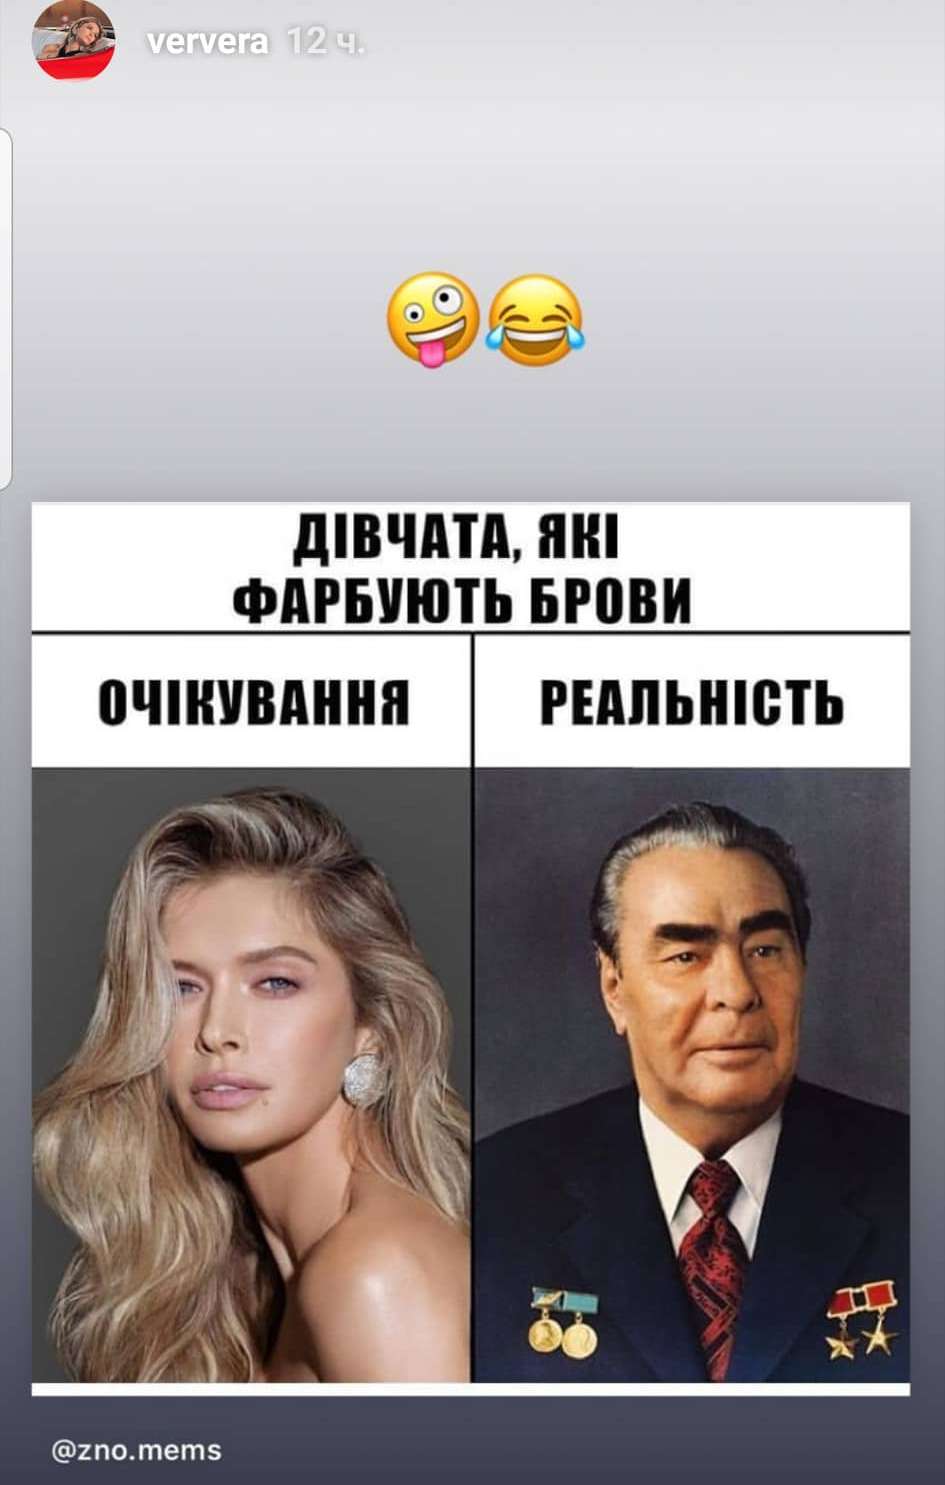 Вера Брежнева потроллила свои брови, сравнив их с бровями Леонида Брежнева - фото 439065